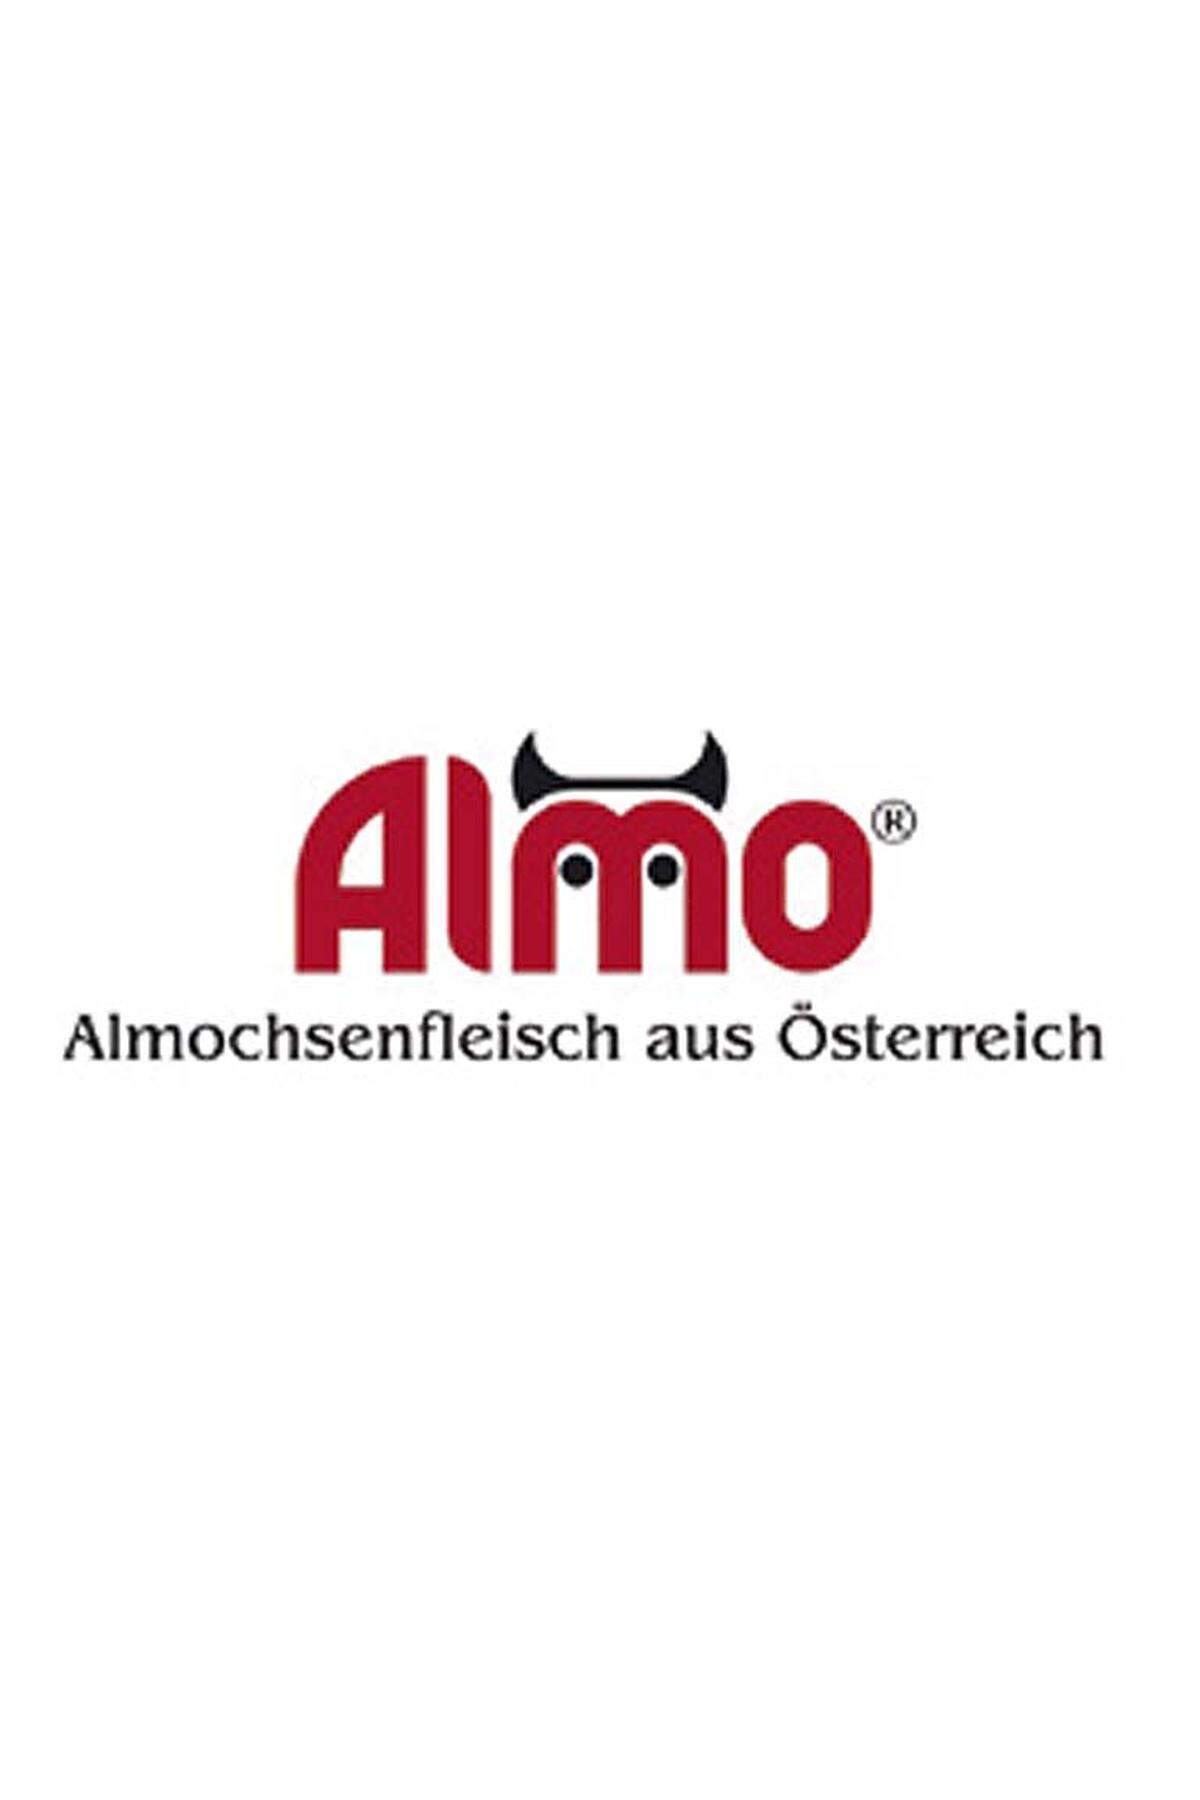 Die Marke steht für österreichisches Qualitätsrindfleisch, also Almochsenfleisch. Die Tiere stammen von den Almen der Steiermark, aber auch aus Kärnten und Niederösterreich. Die Einhaltung der Kriterien (gentechnikfreie Fütterung und besonders artgerechte Haltung) wird von unabhängigen Kontroll- und Zertifizierungsfirmen überprüft.